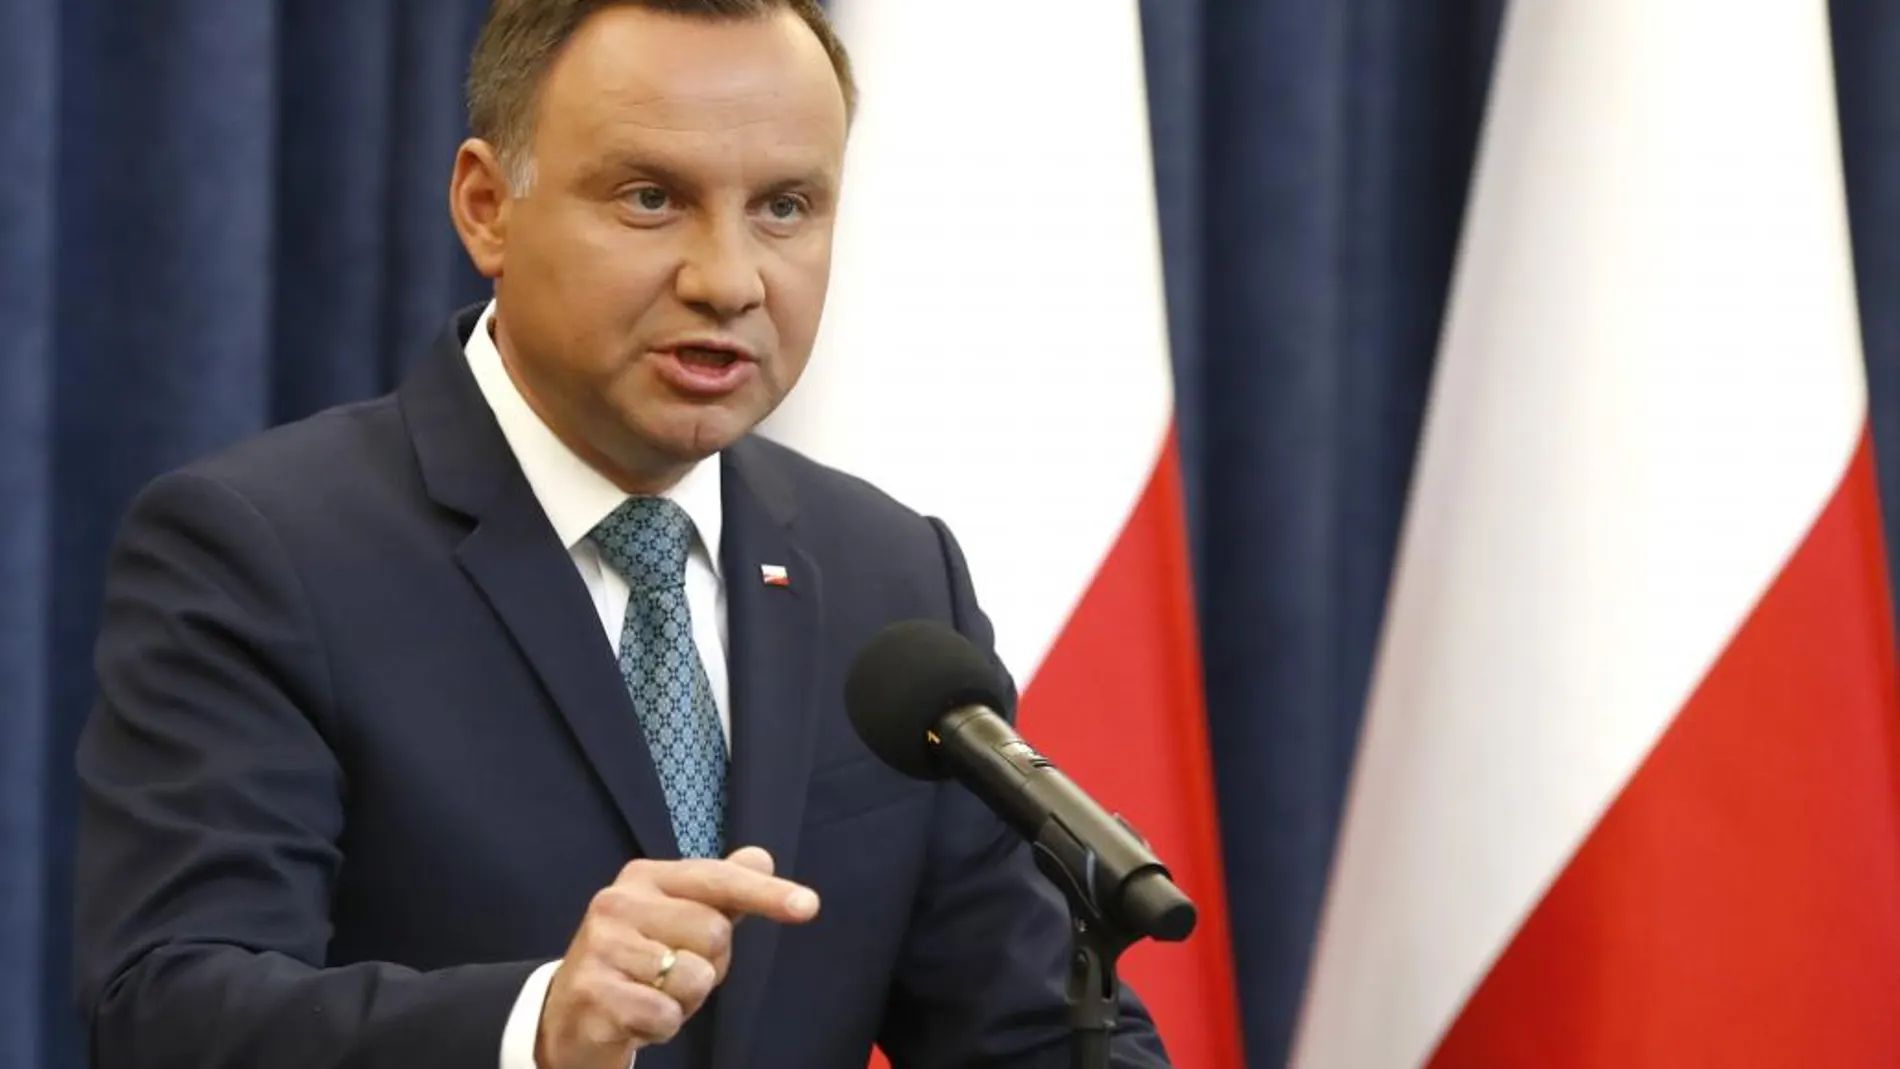 El presidente de Polonia, Andrej Duda, aspiraba a la reelección en las elecciones de mayo/EFE